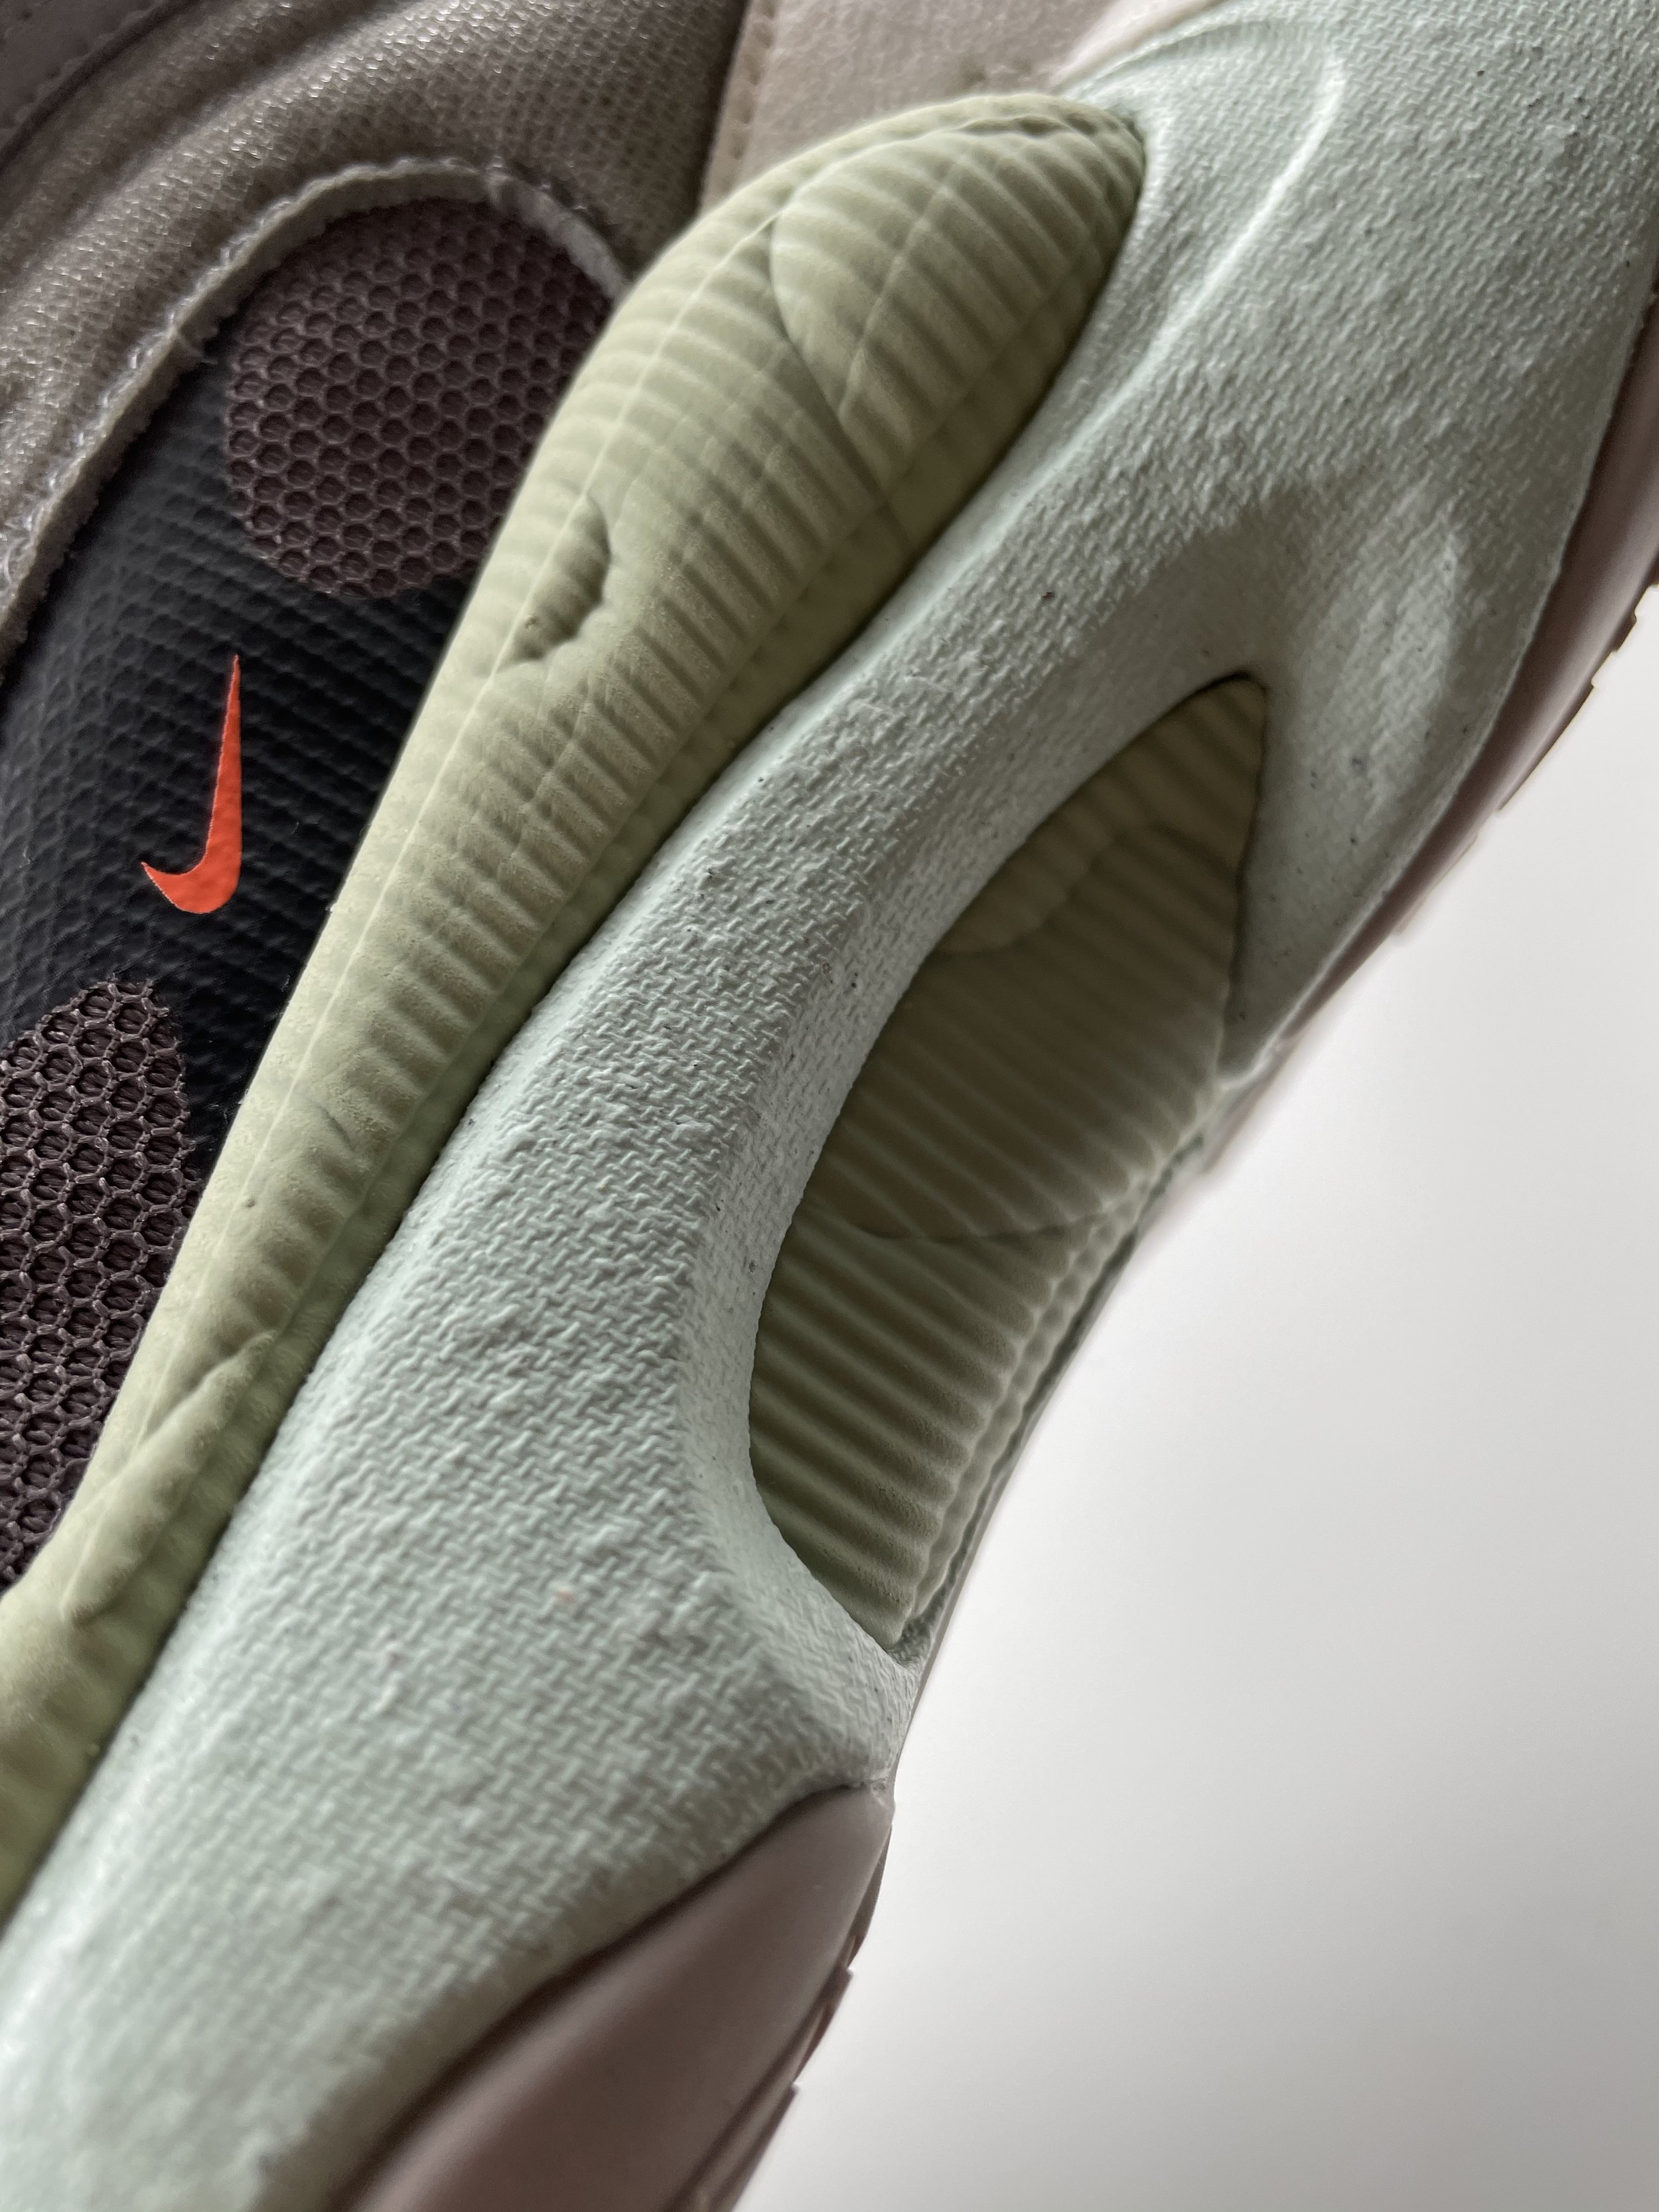 Men’s Sneakers - Drew Little - 01 Nike React Atlas.jpg